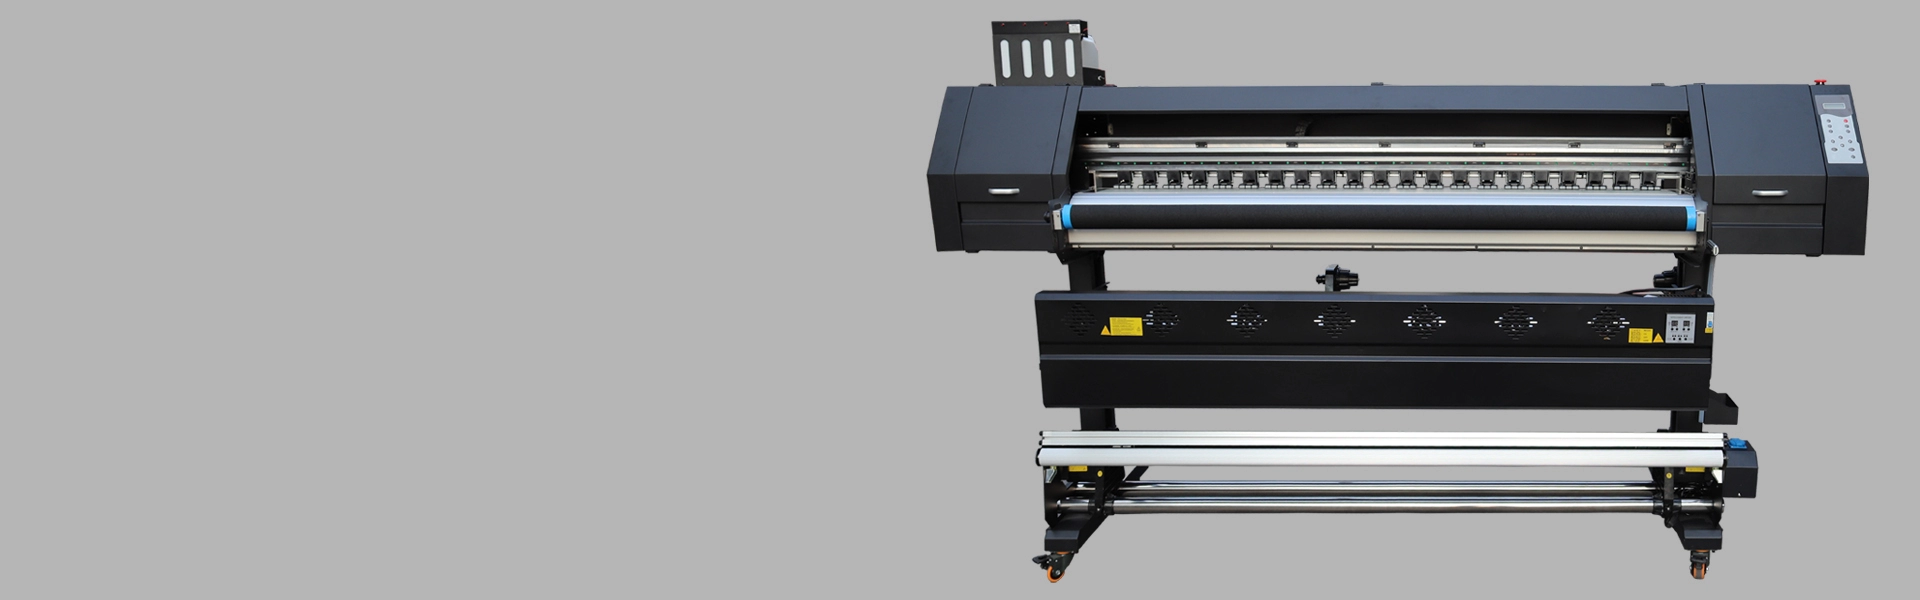 I3200 Sublimación OLLIN-E1804 Impresora